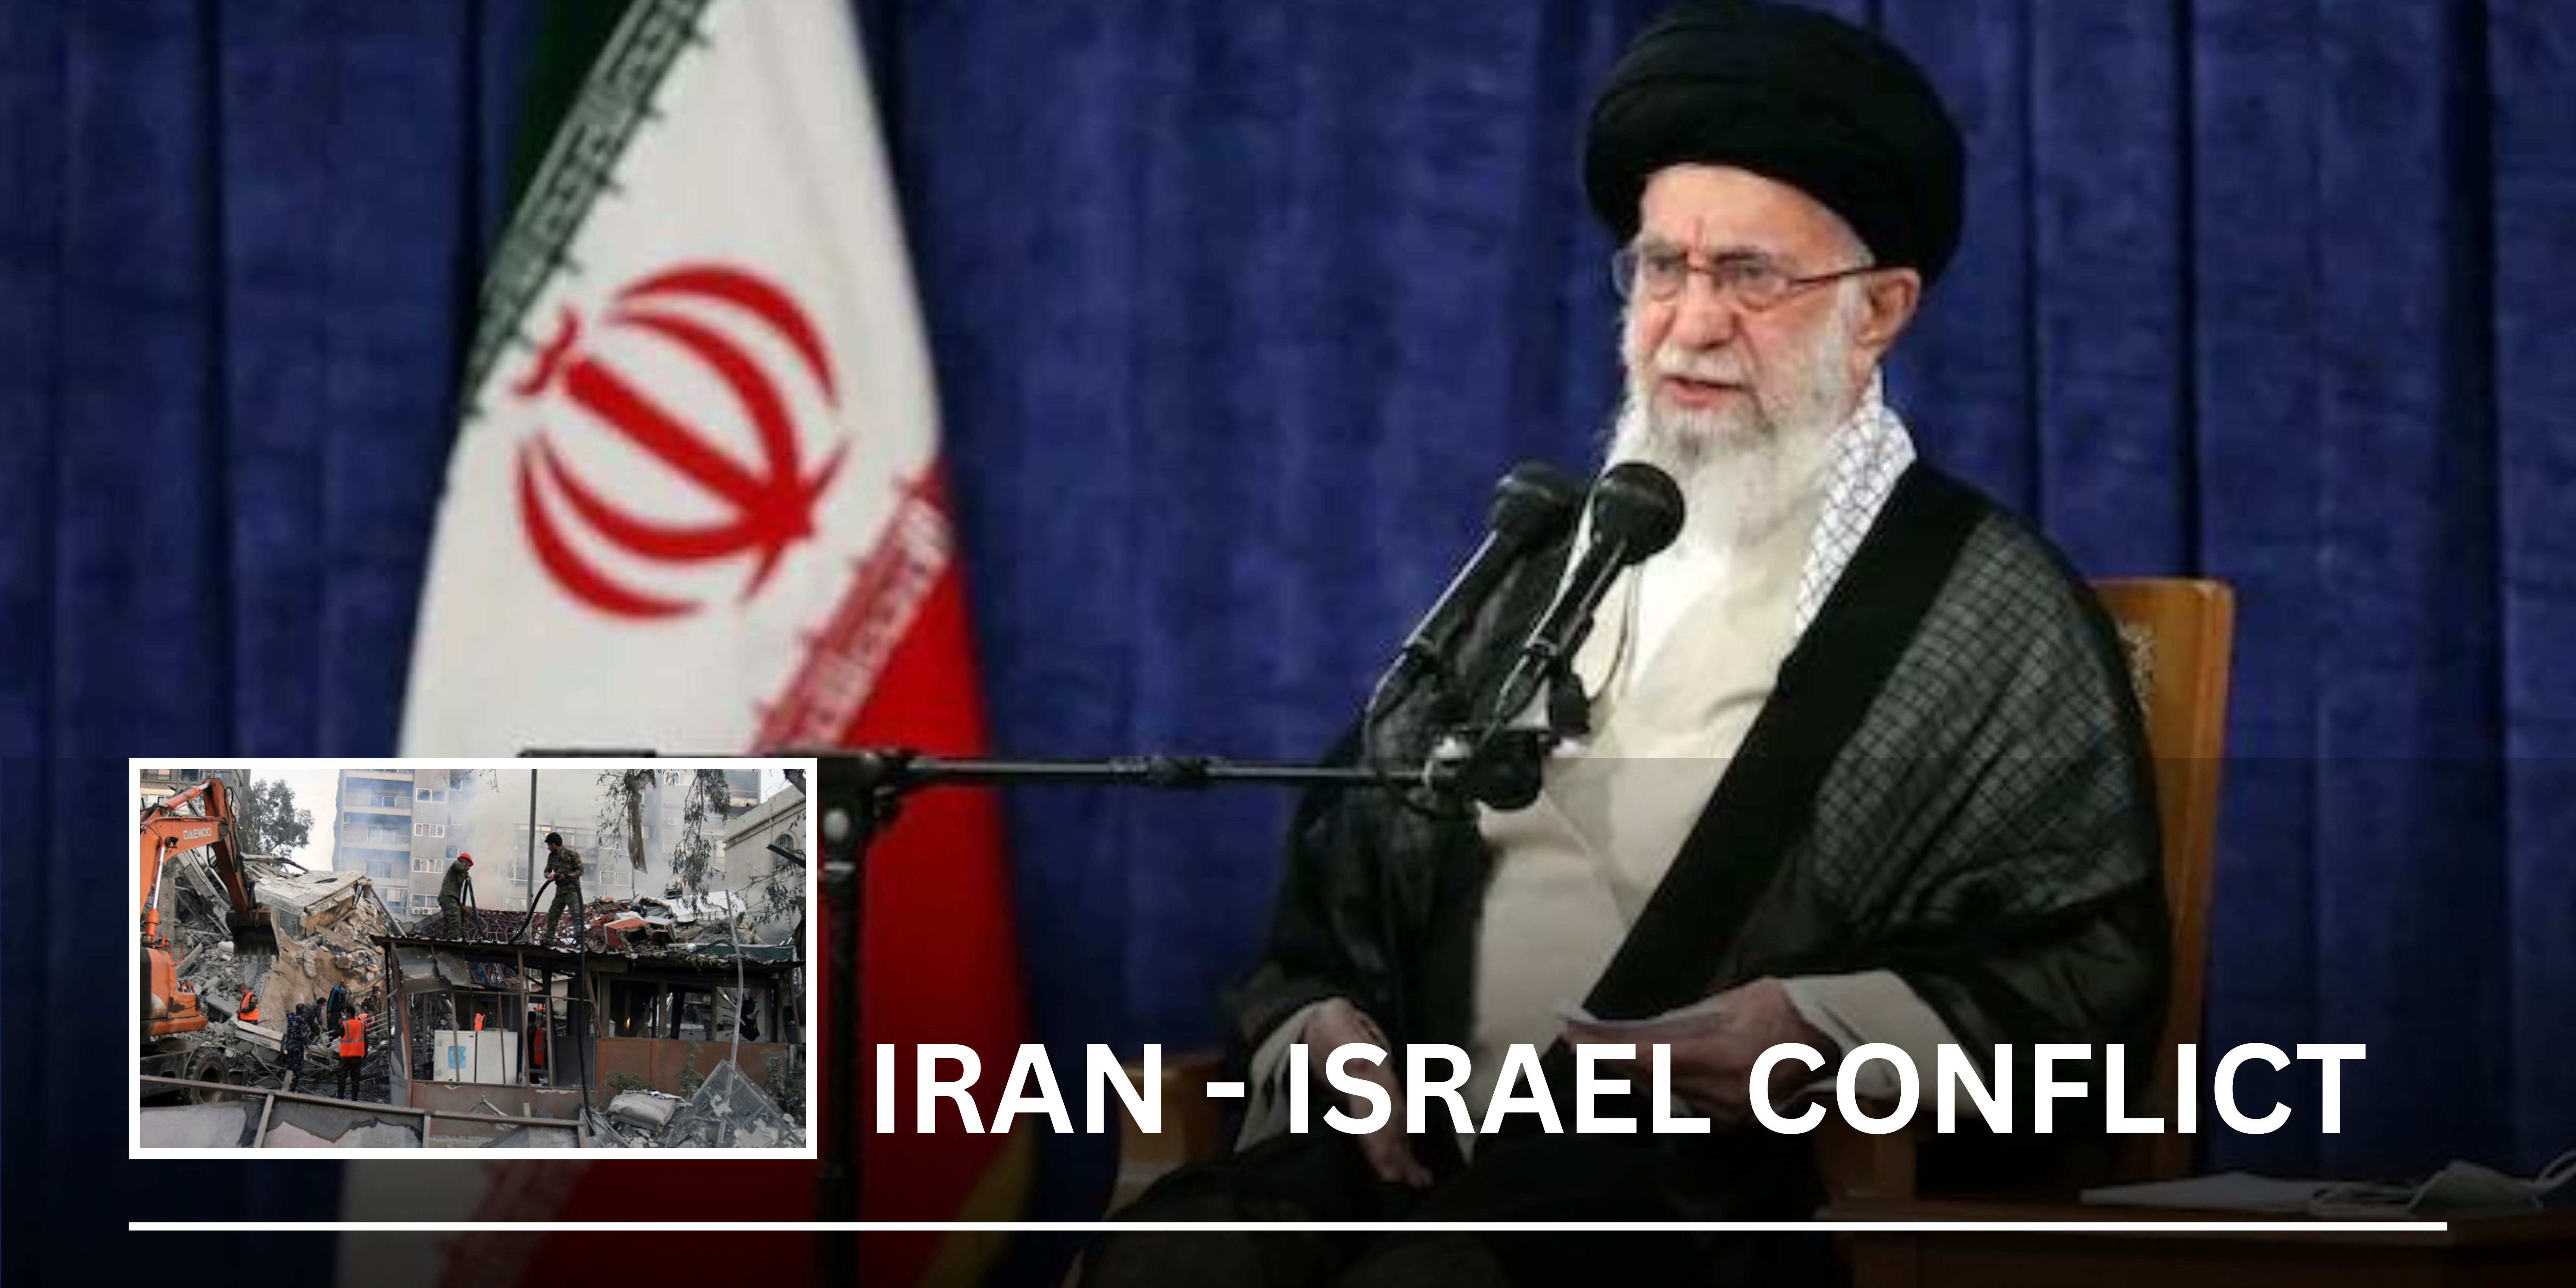 IRAN : 48 घंटे में कर सकता है इजराइल पर हमला कर सकता है!